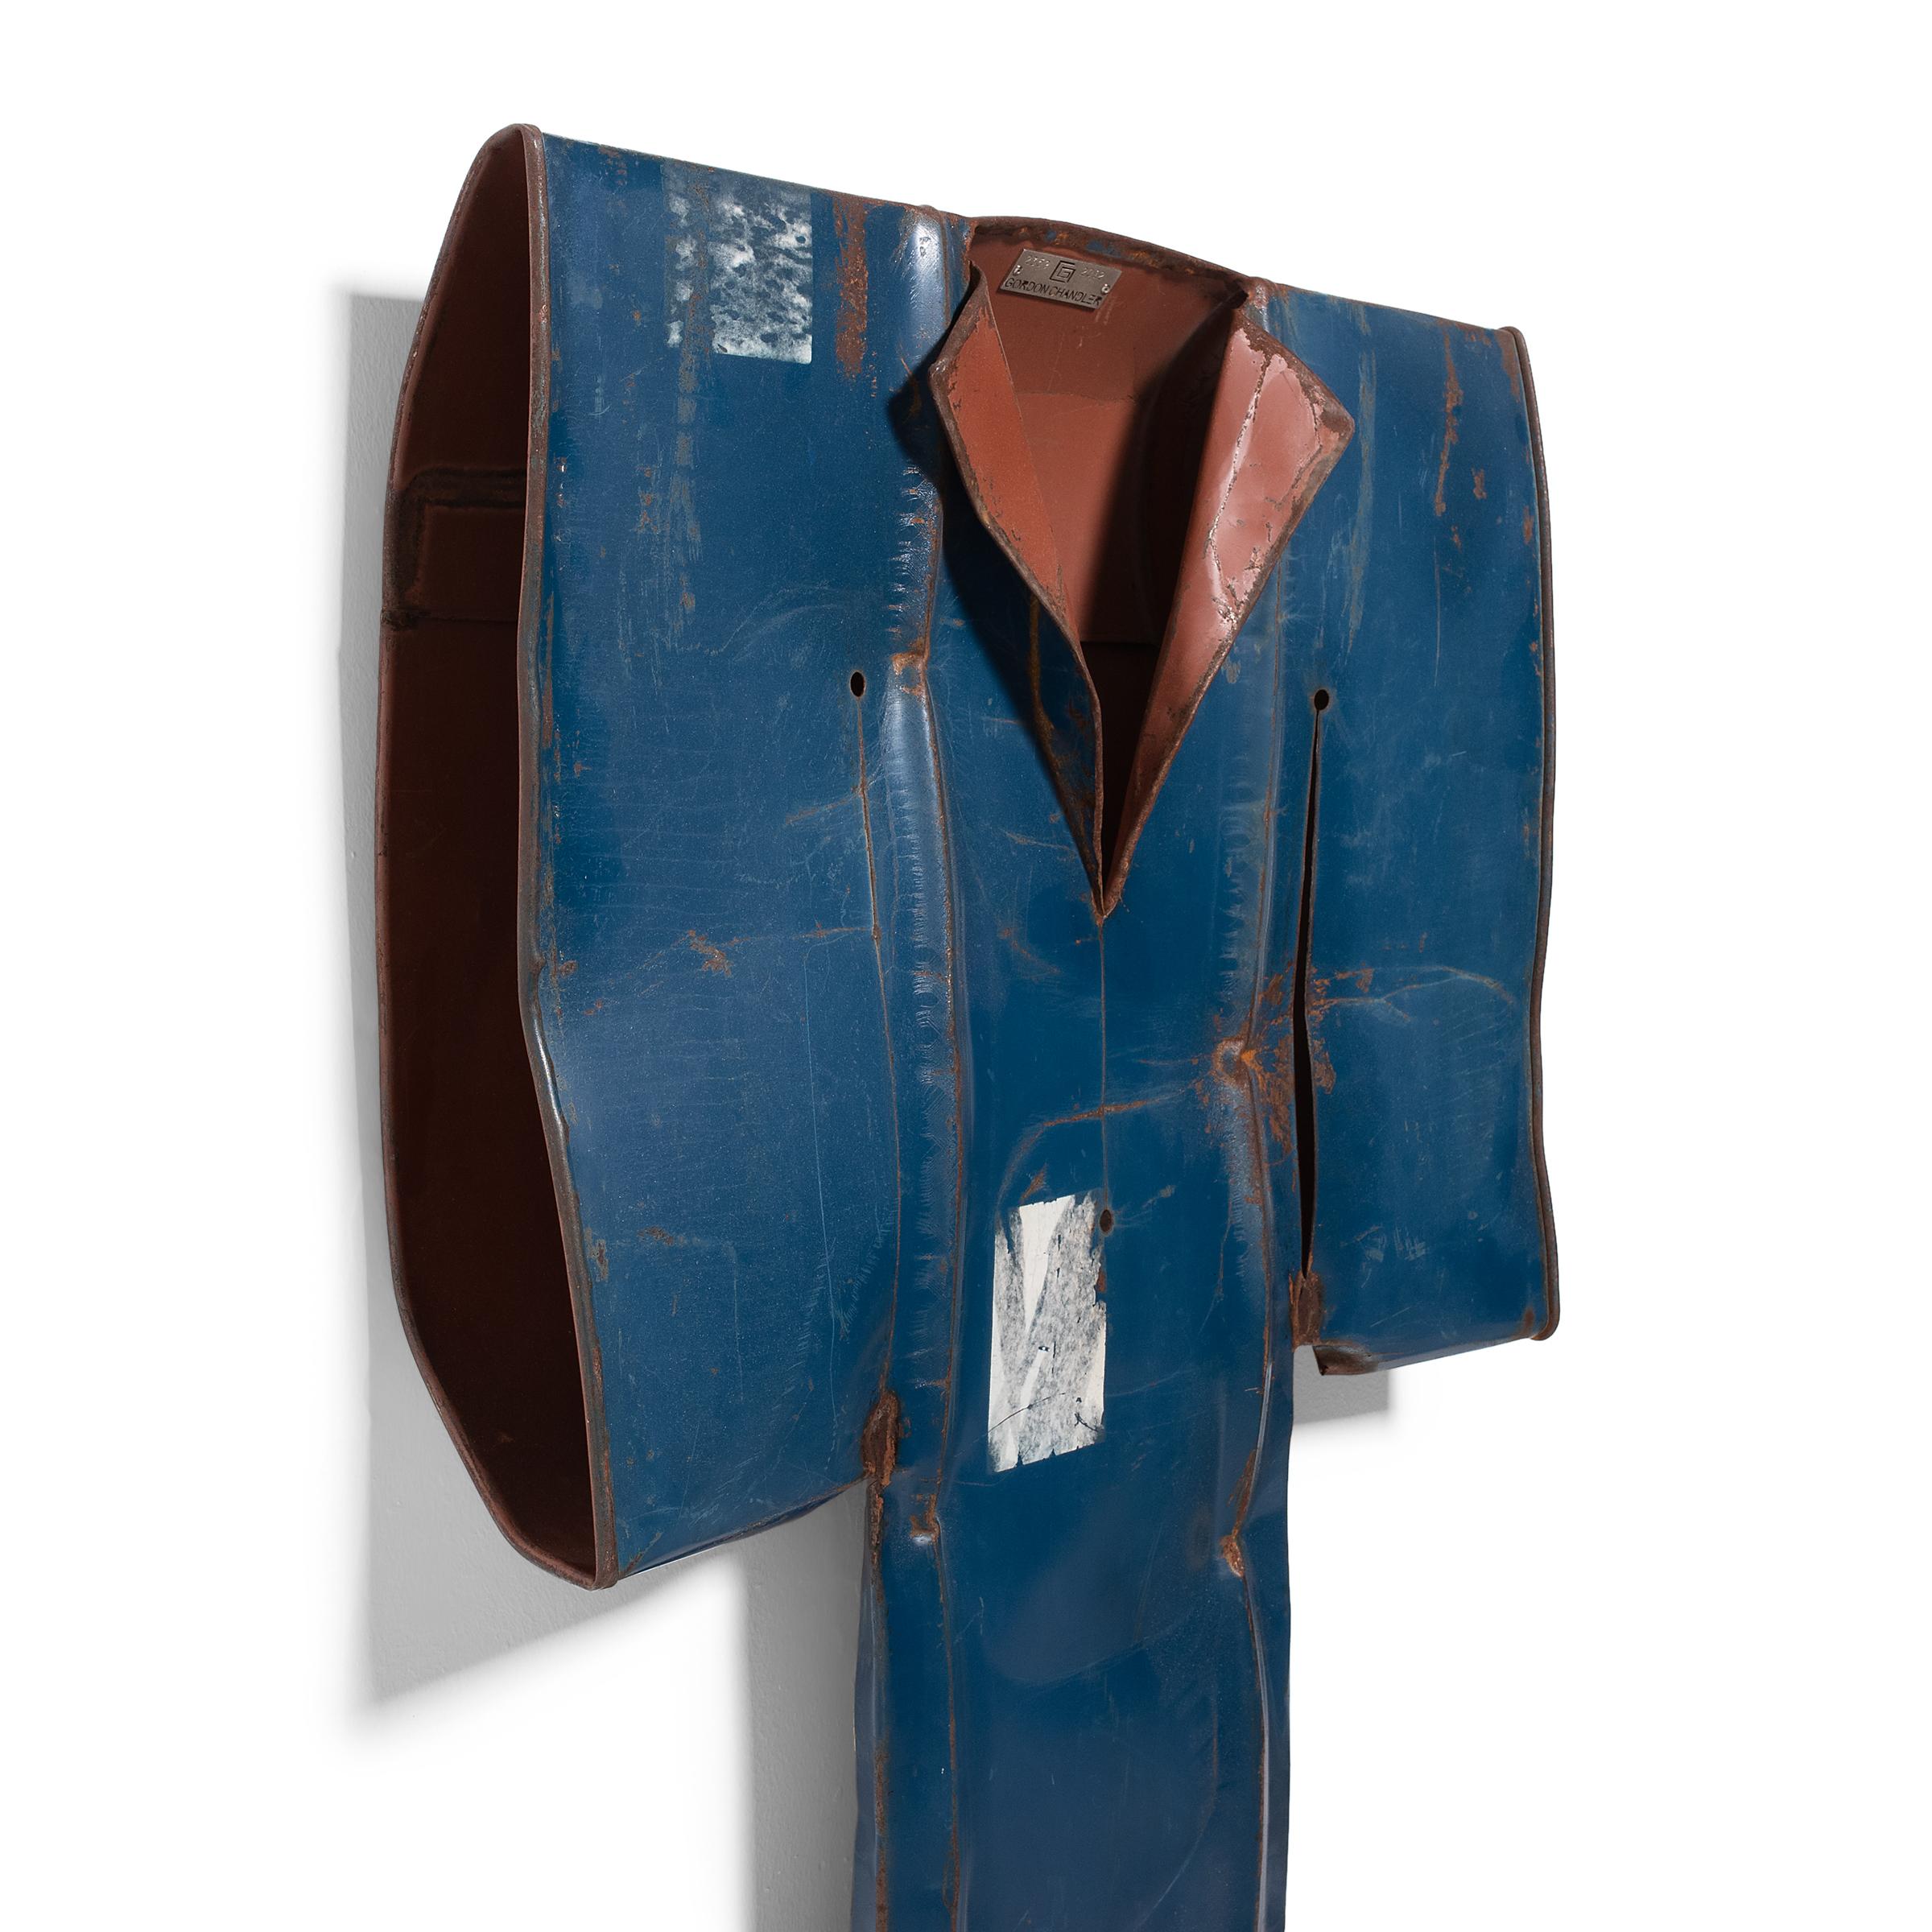 Après avoir découvert un tambour en acier usé par le temps et déformé pour ressembler à la manche d'un vêtement, l'artiste Gordon Chandler a eu l'idée de se lancer dans une série de sculptures de kimonos formées à partir de déchets métalliques